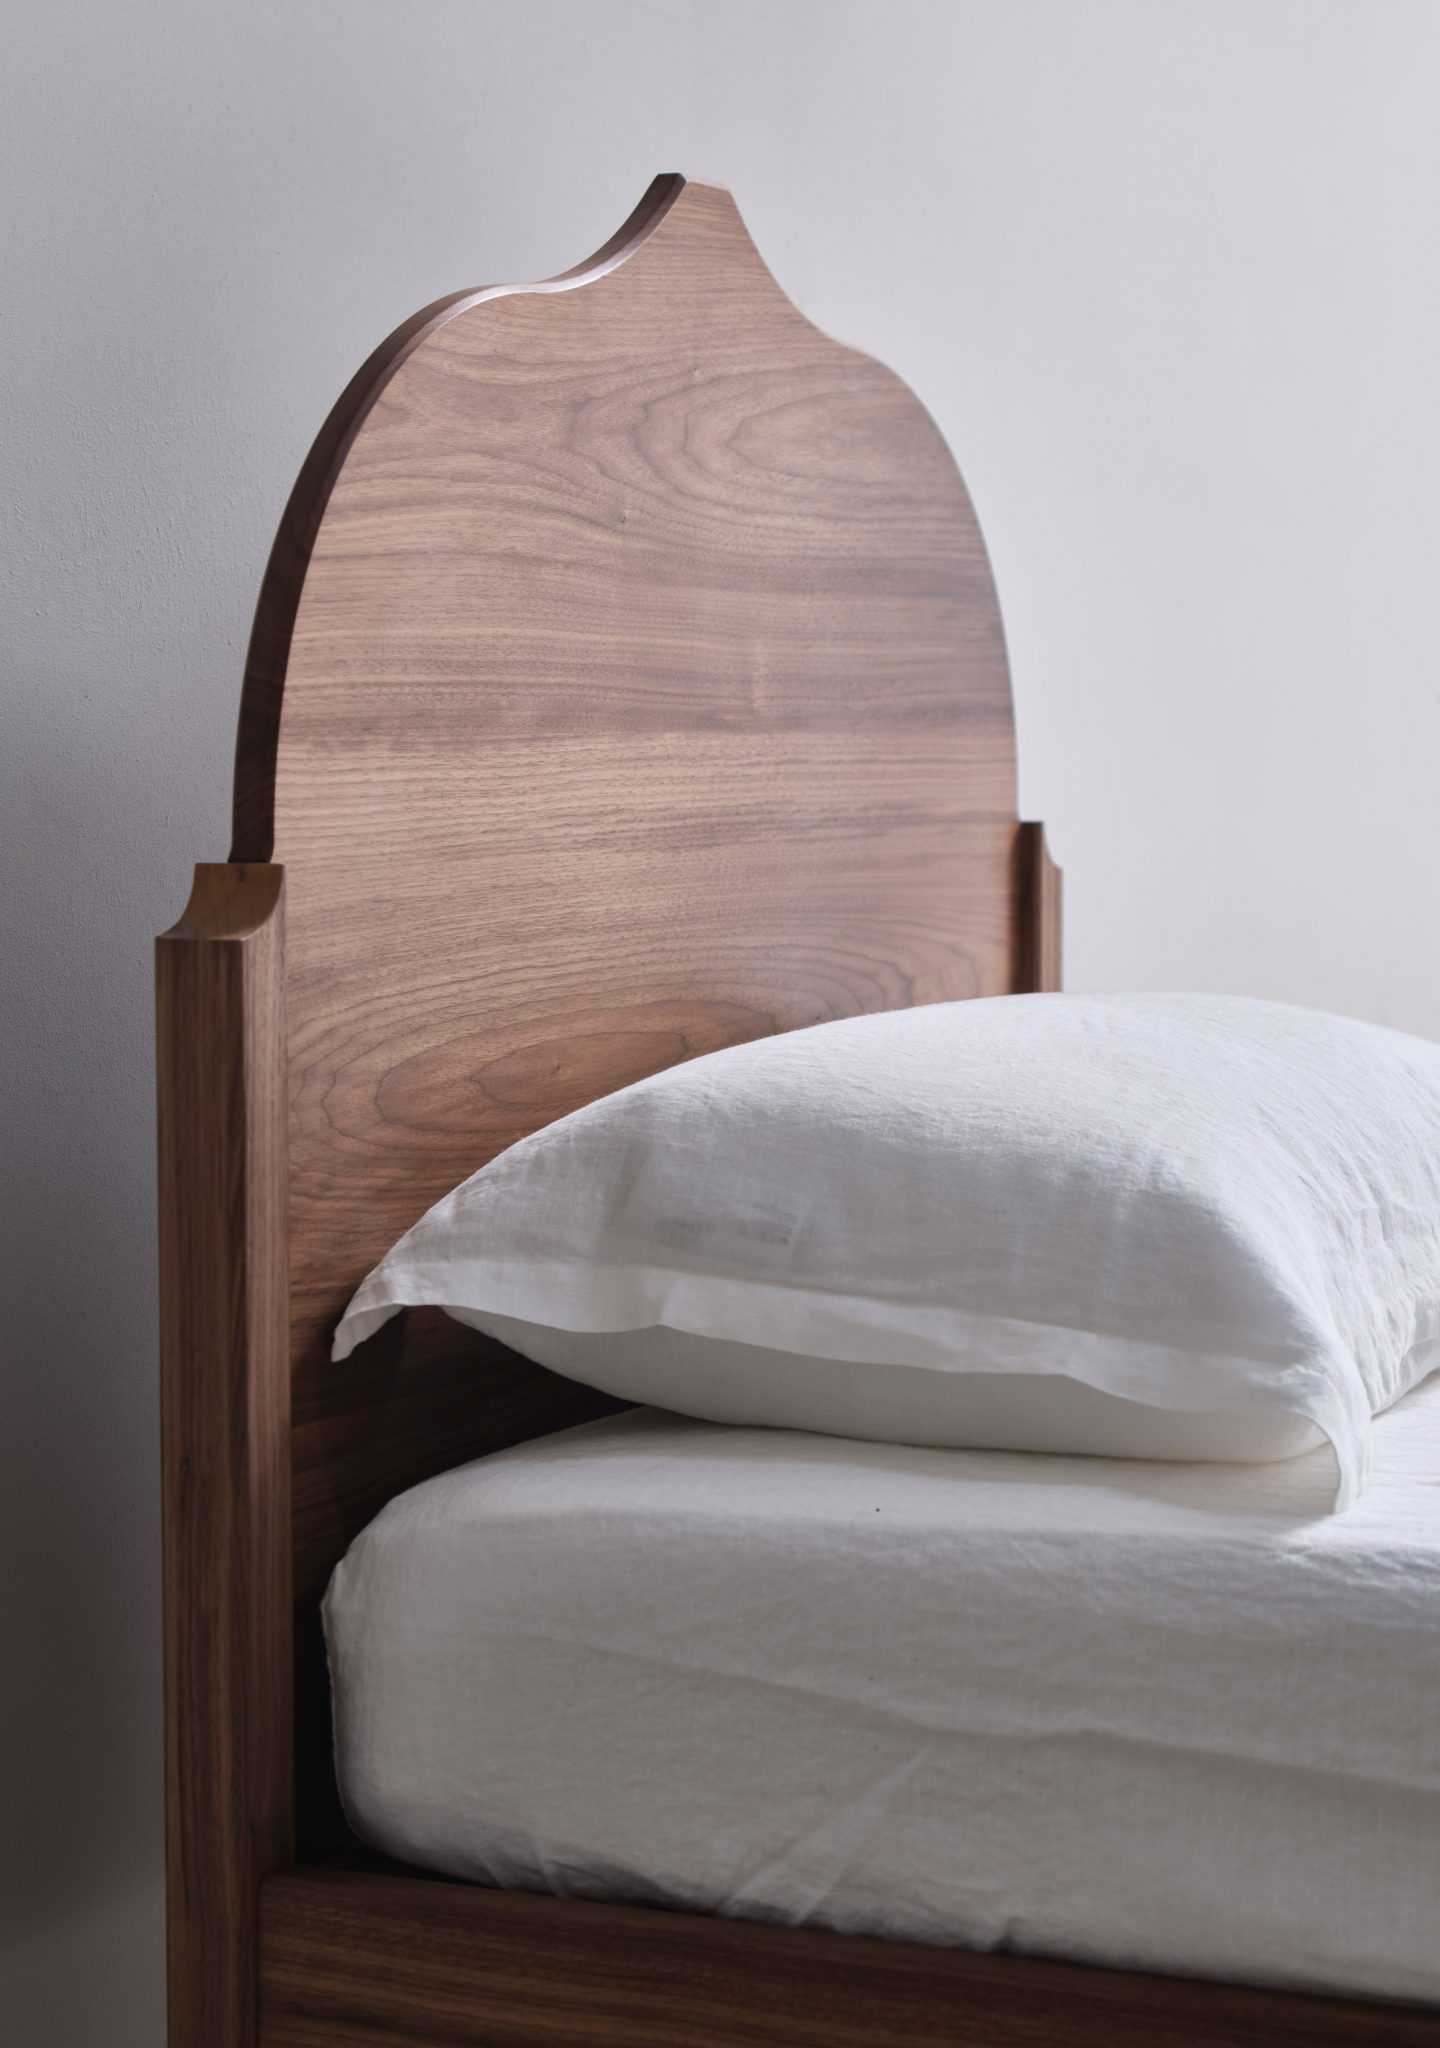 Pinch将经典材料与最小形状配对用于最新卧室家具